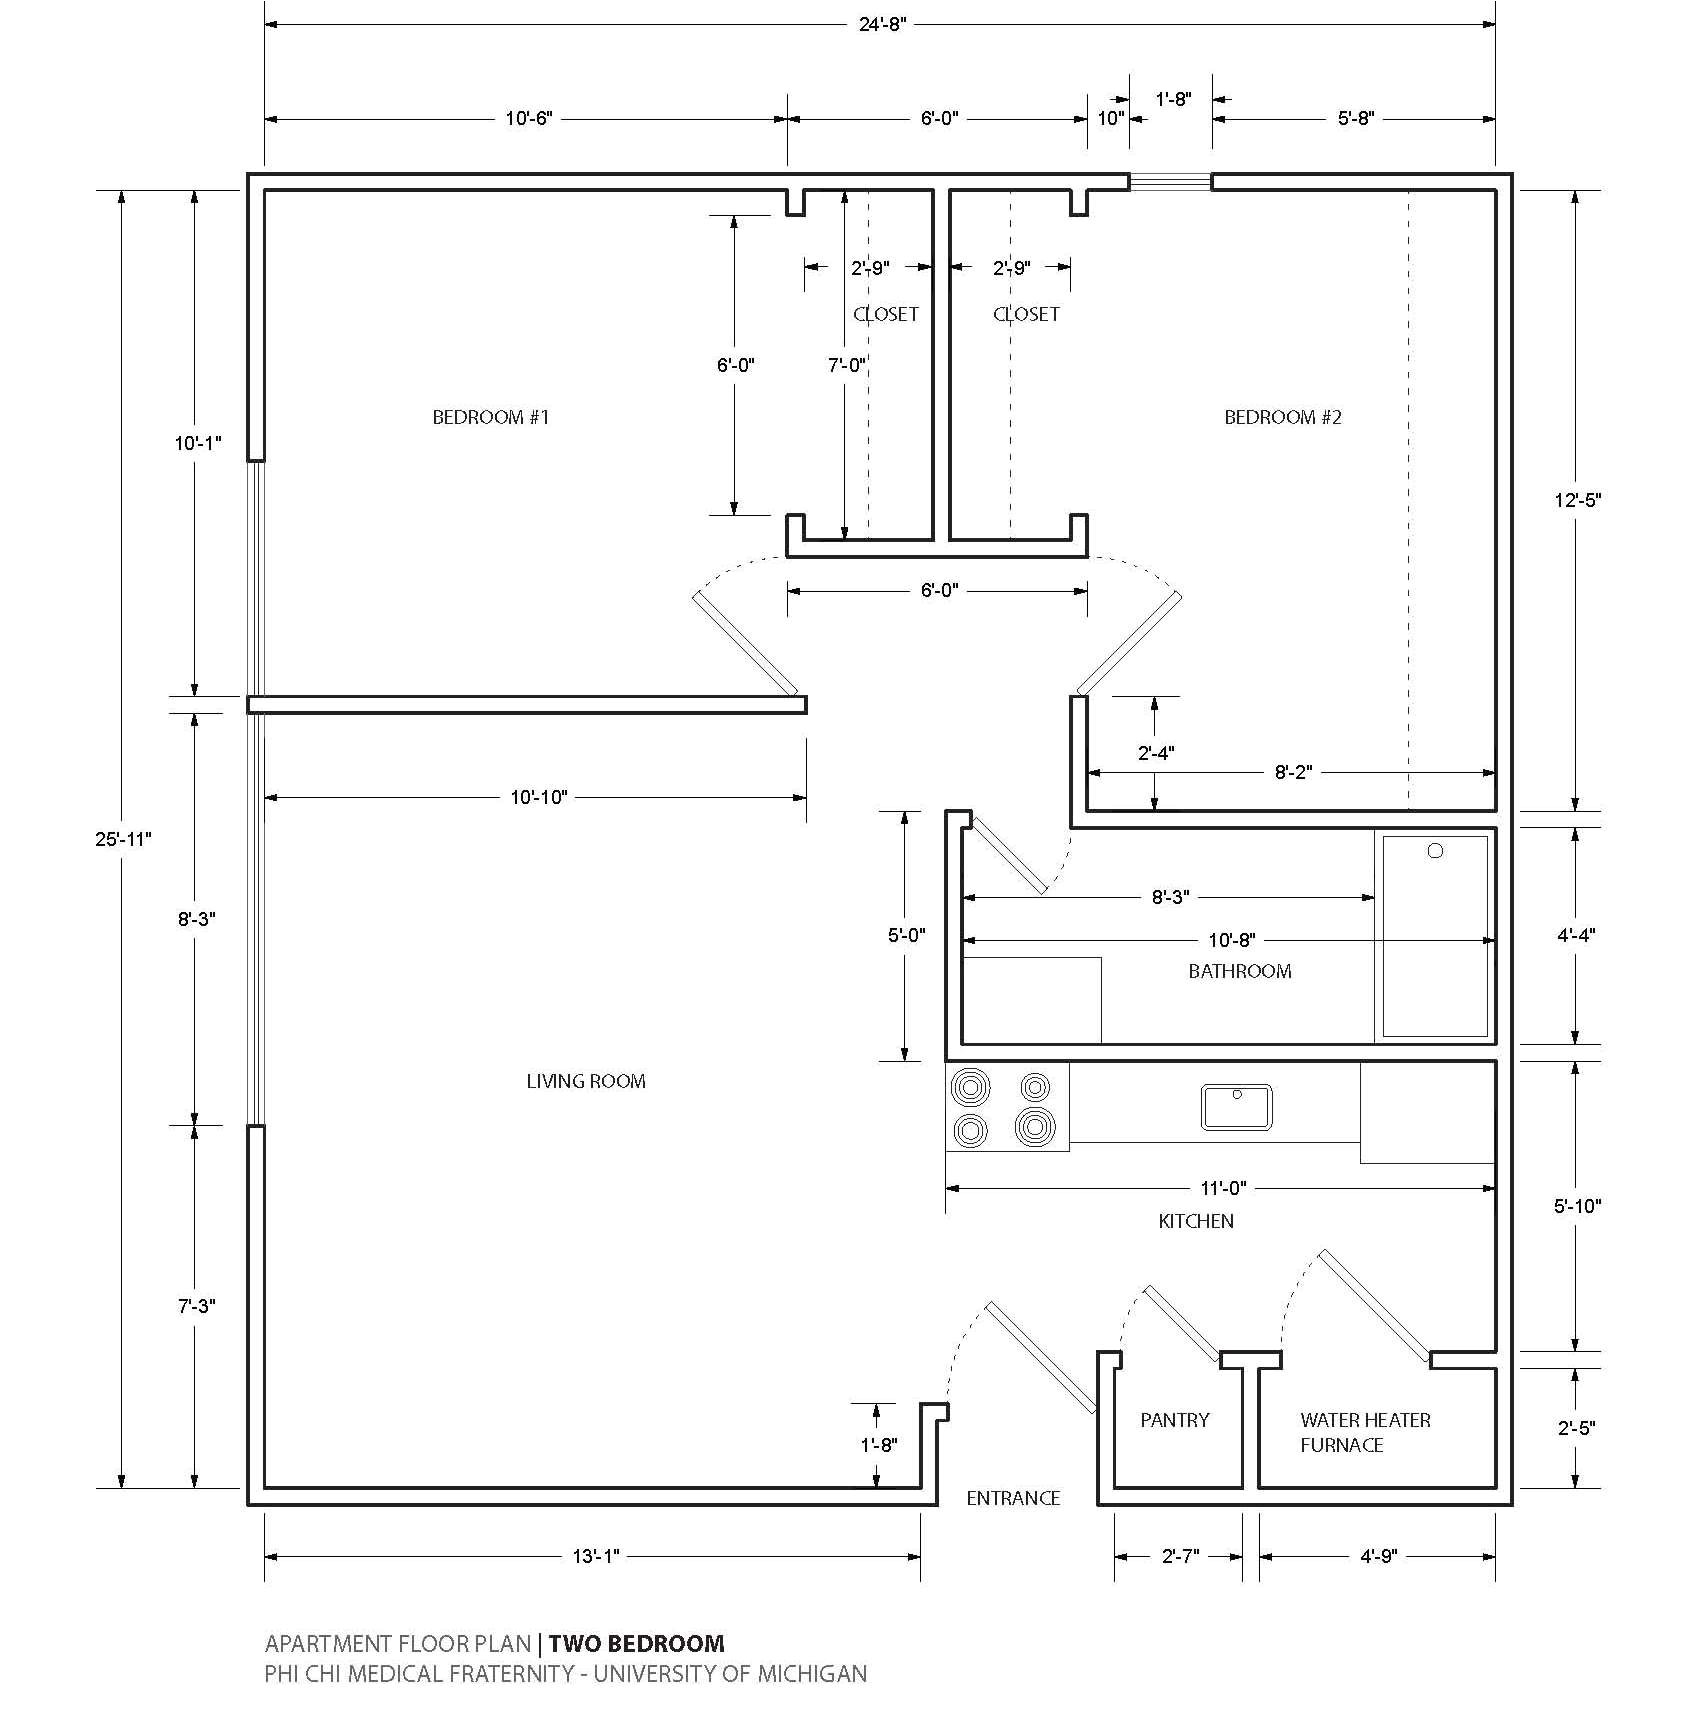 paragon homes floor plans unique 8x8 jack and jill bathroom floor plan slyfelinos plans with